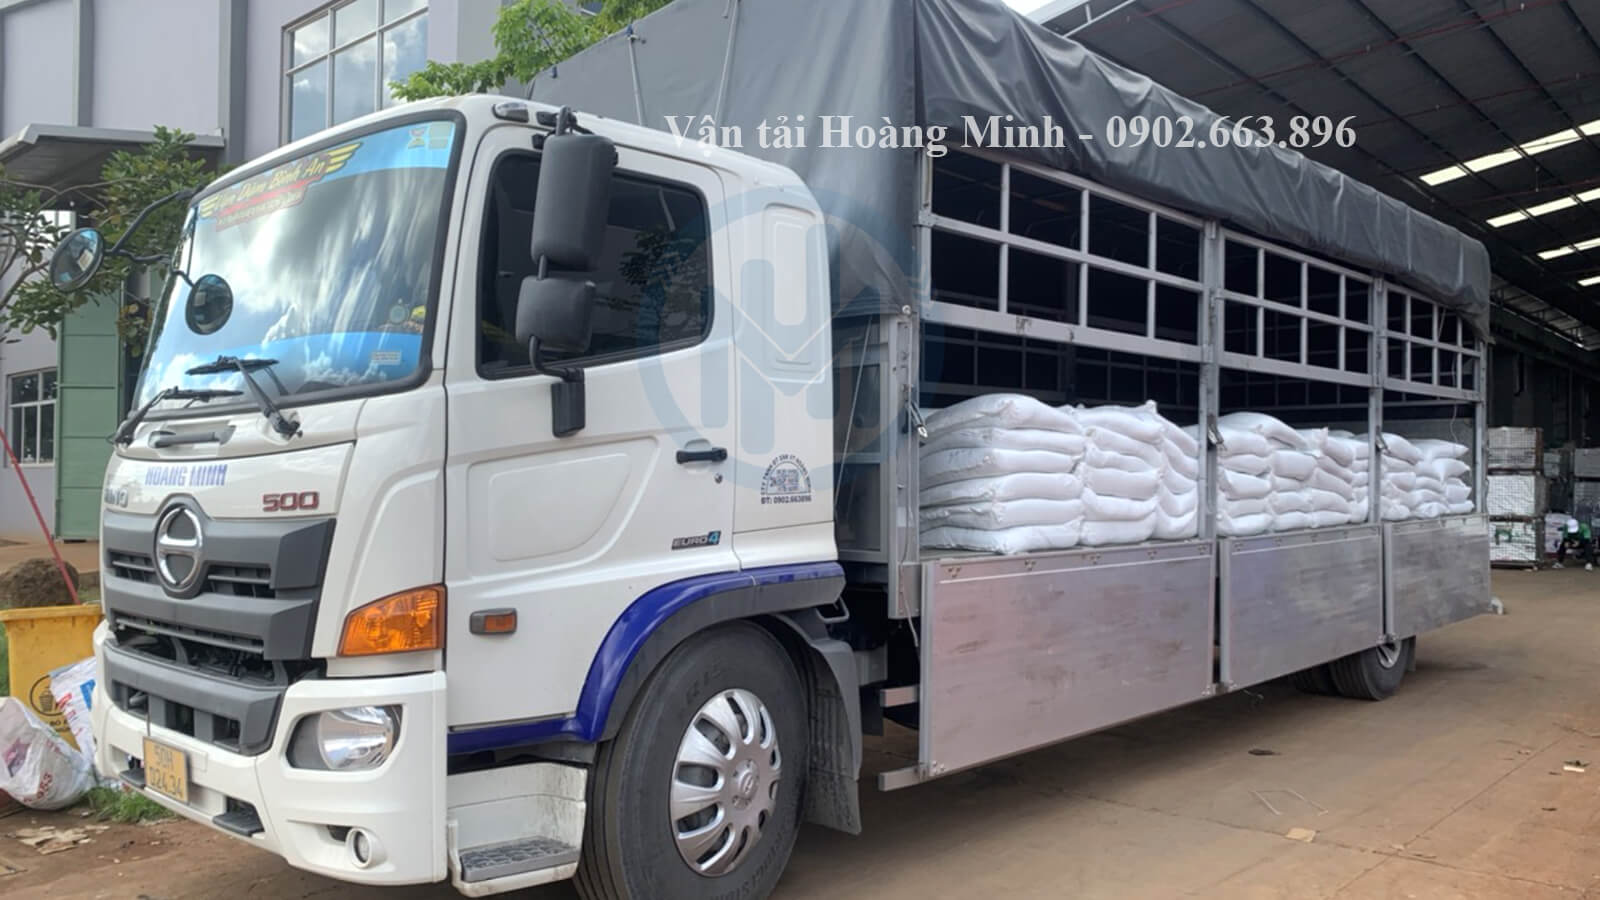 Vận tải Hoàng Minh cho thuê xe tải chở hàng Đồng Tháp với mức giá ưu đãi.jpg